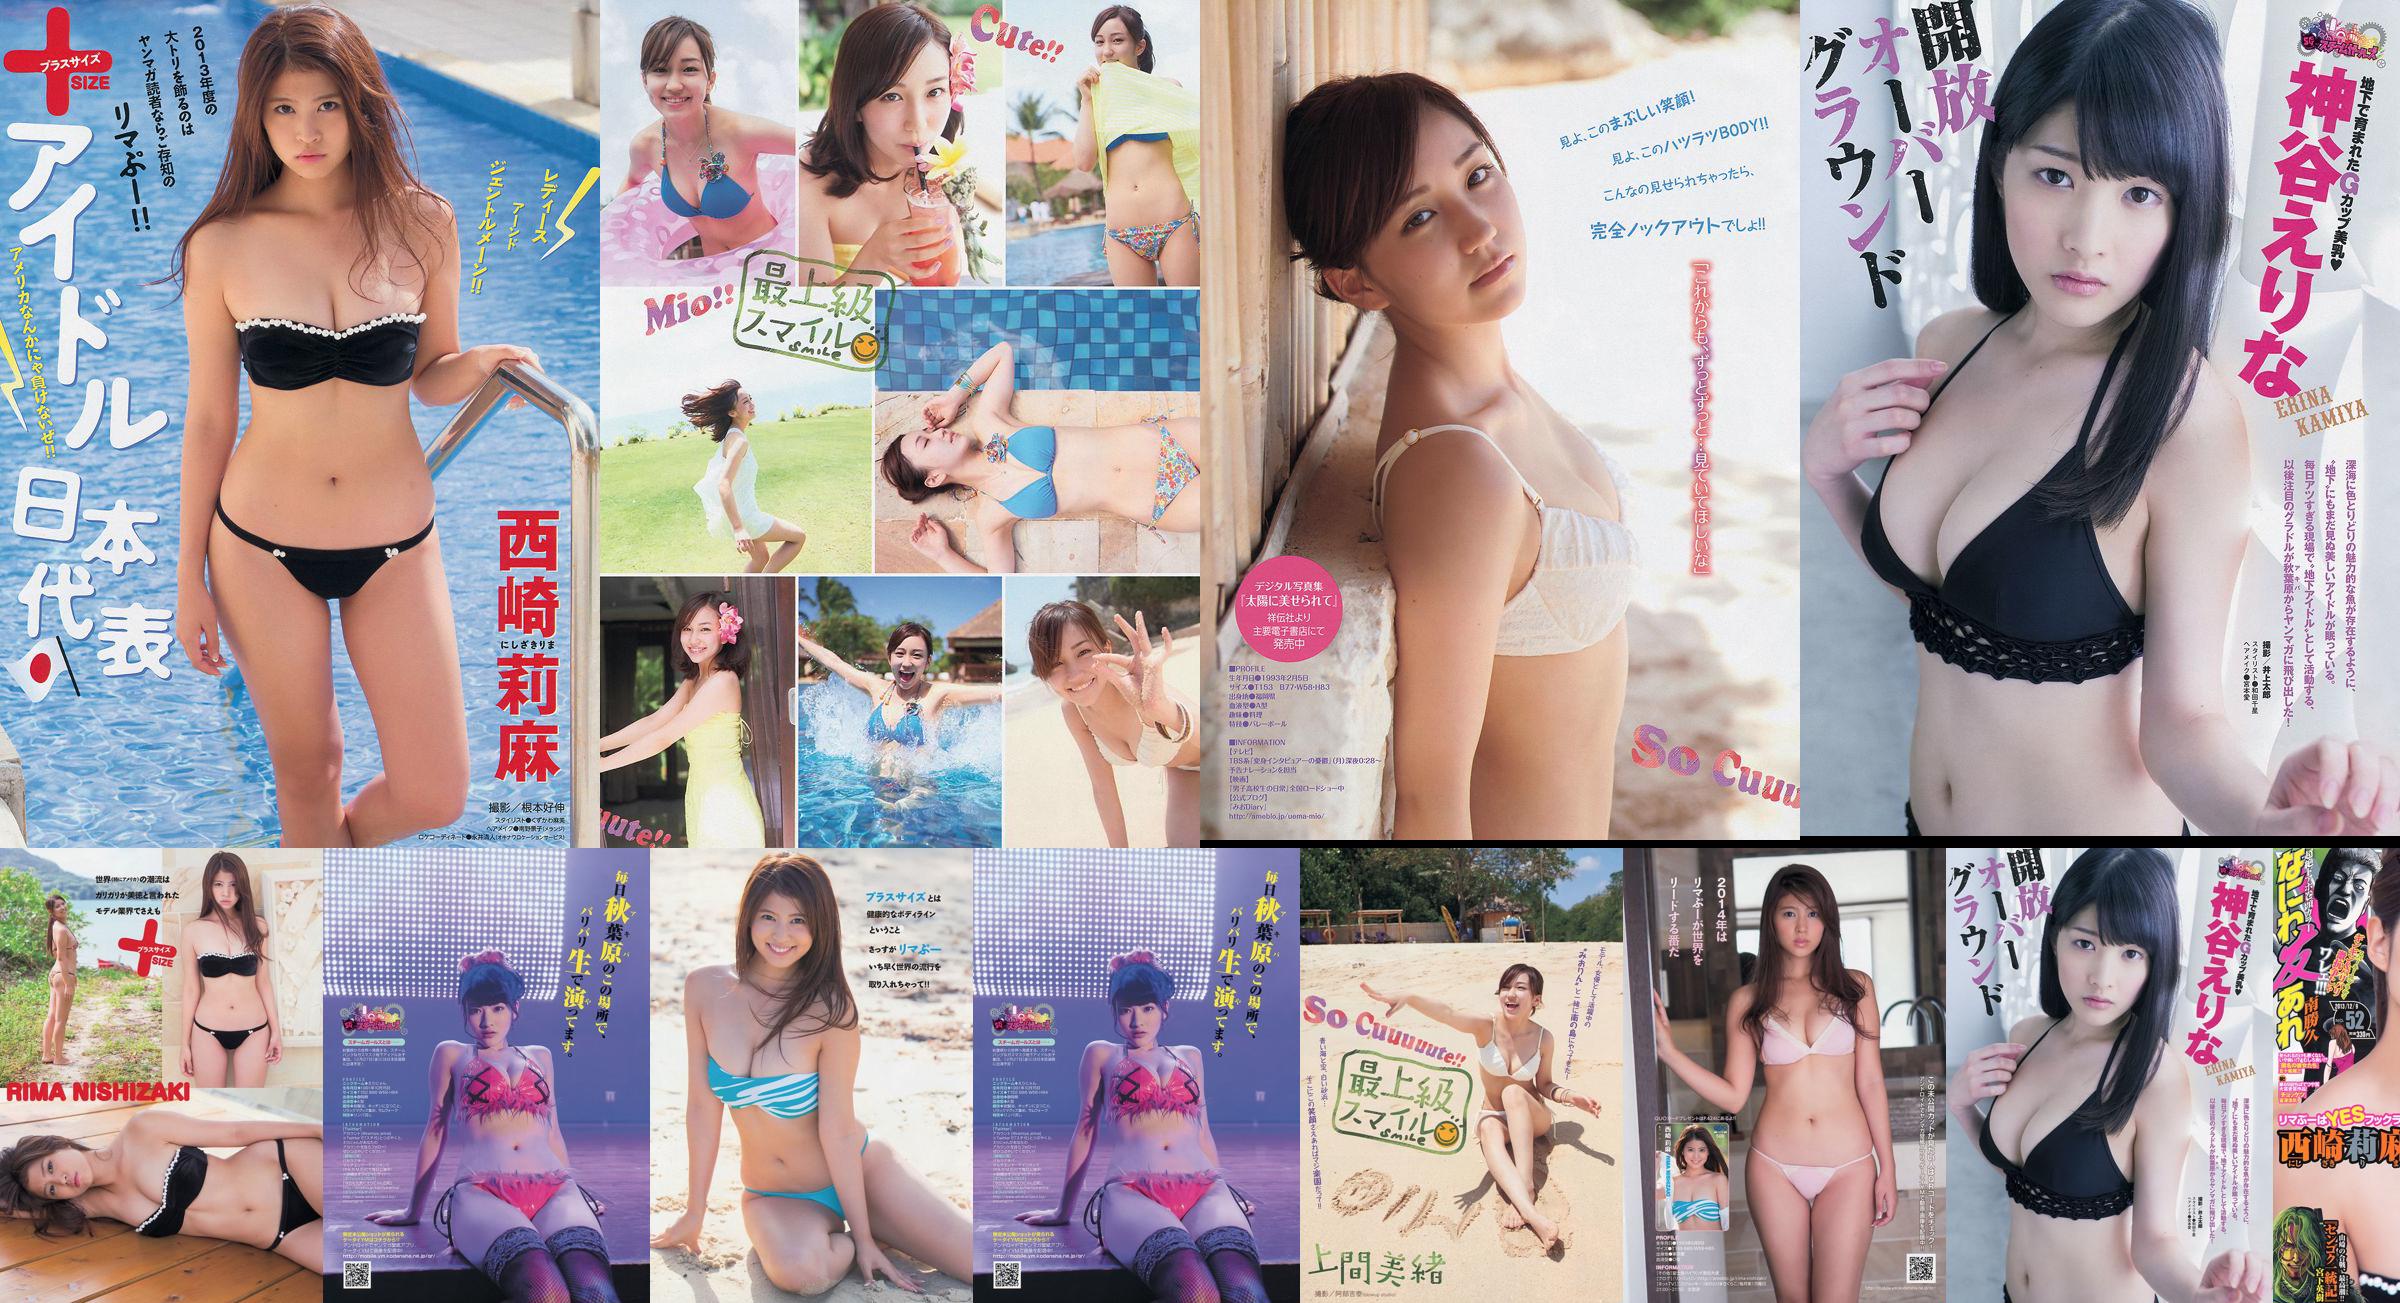 [Junge Zeitschrift] Rima Nishizaki Mio Uema Erina Kamiya 2013 Nr. 52 Foto Moshi No.de3a87 Seite 2